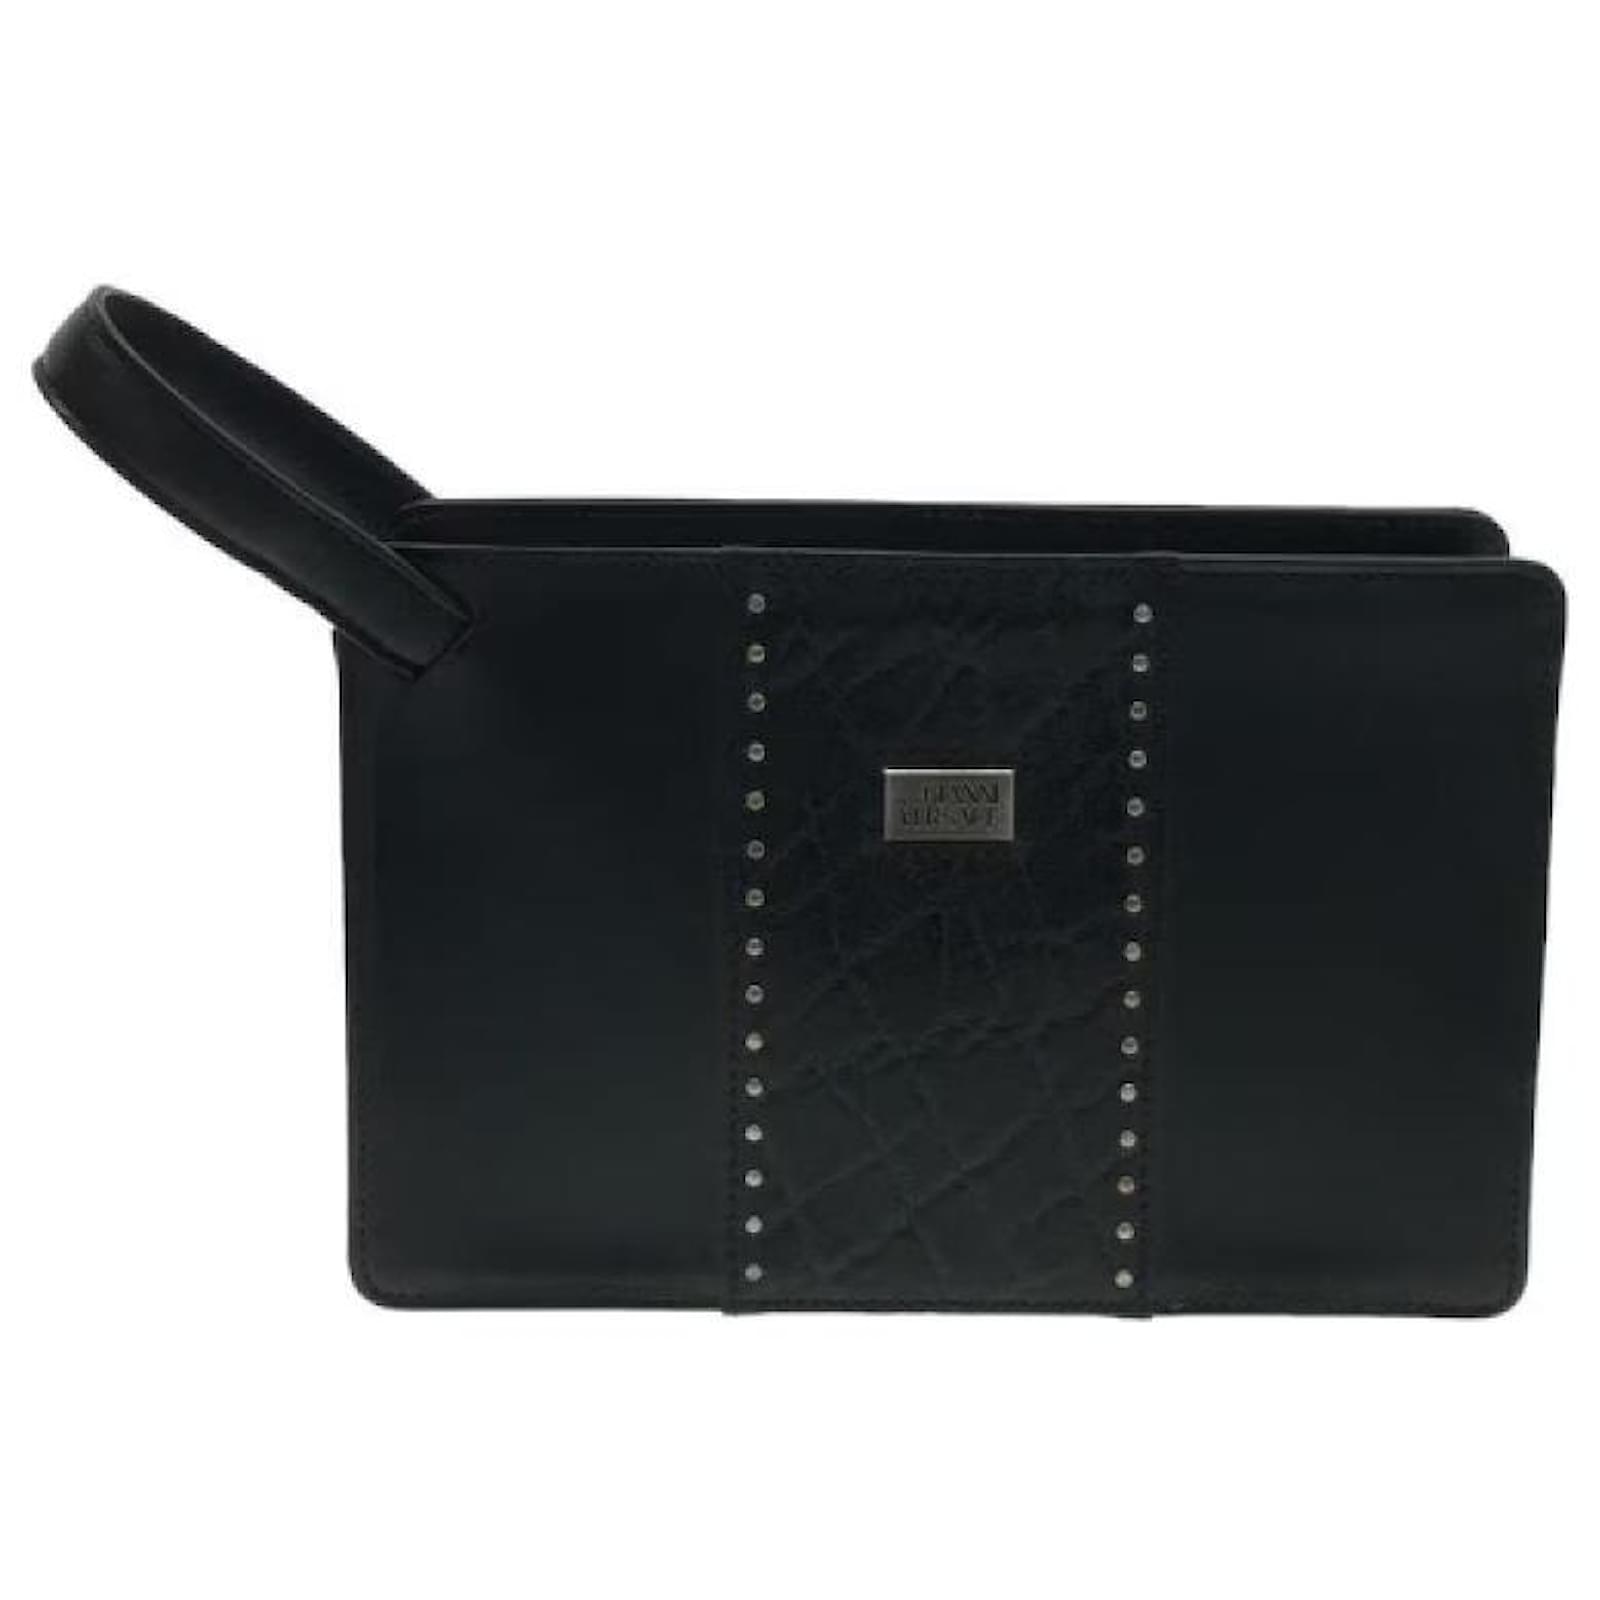 Versace Black Clutch Bag Top Sellers | website.jkuat.ac.ke